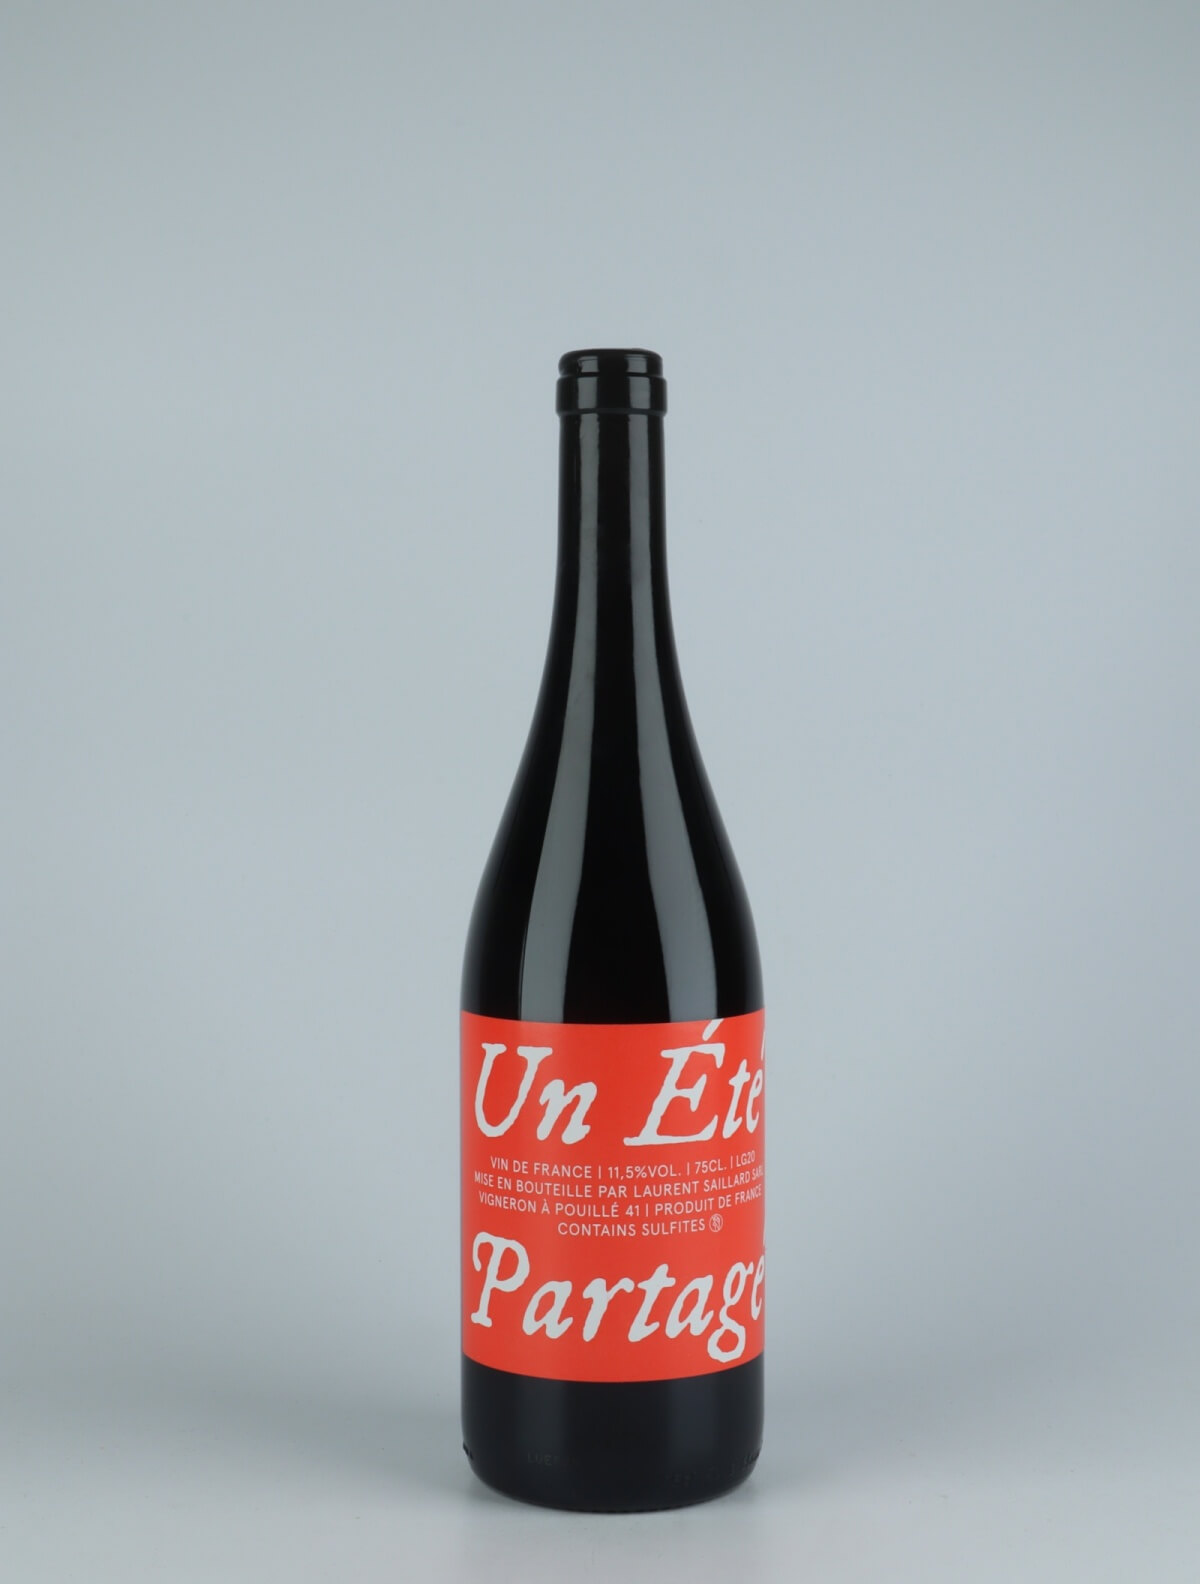 A bottle 2020 Un Été Partagé Red wine from Laurent Saillard, Loire in France